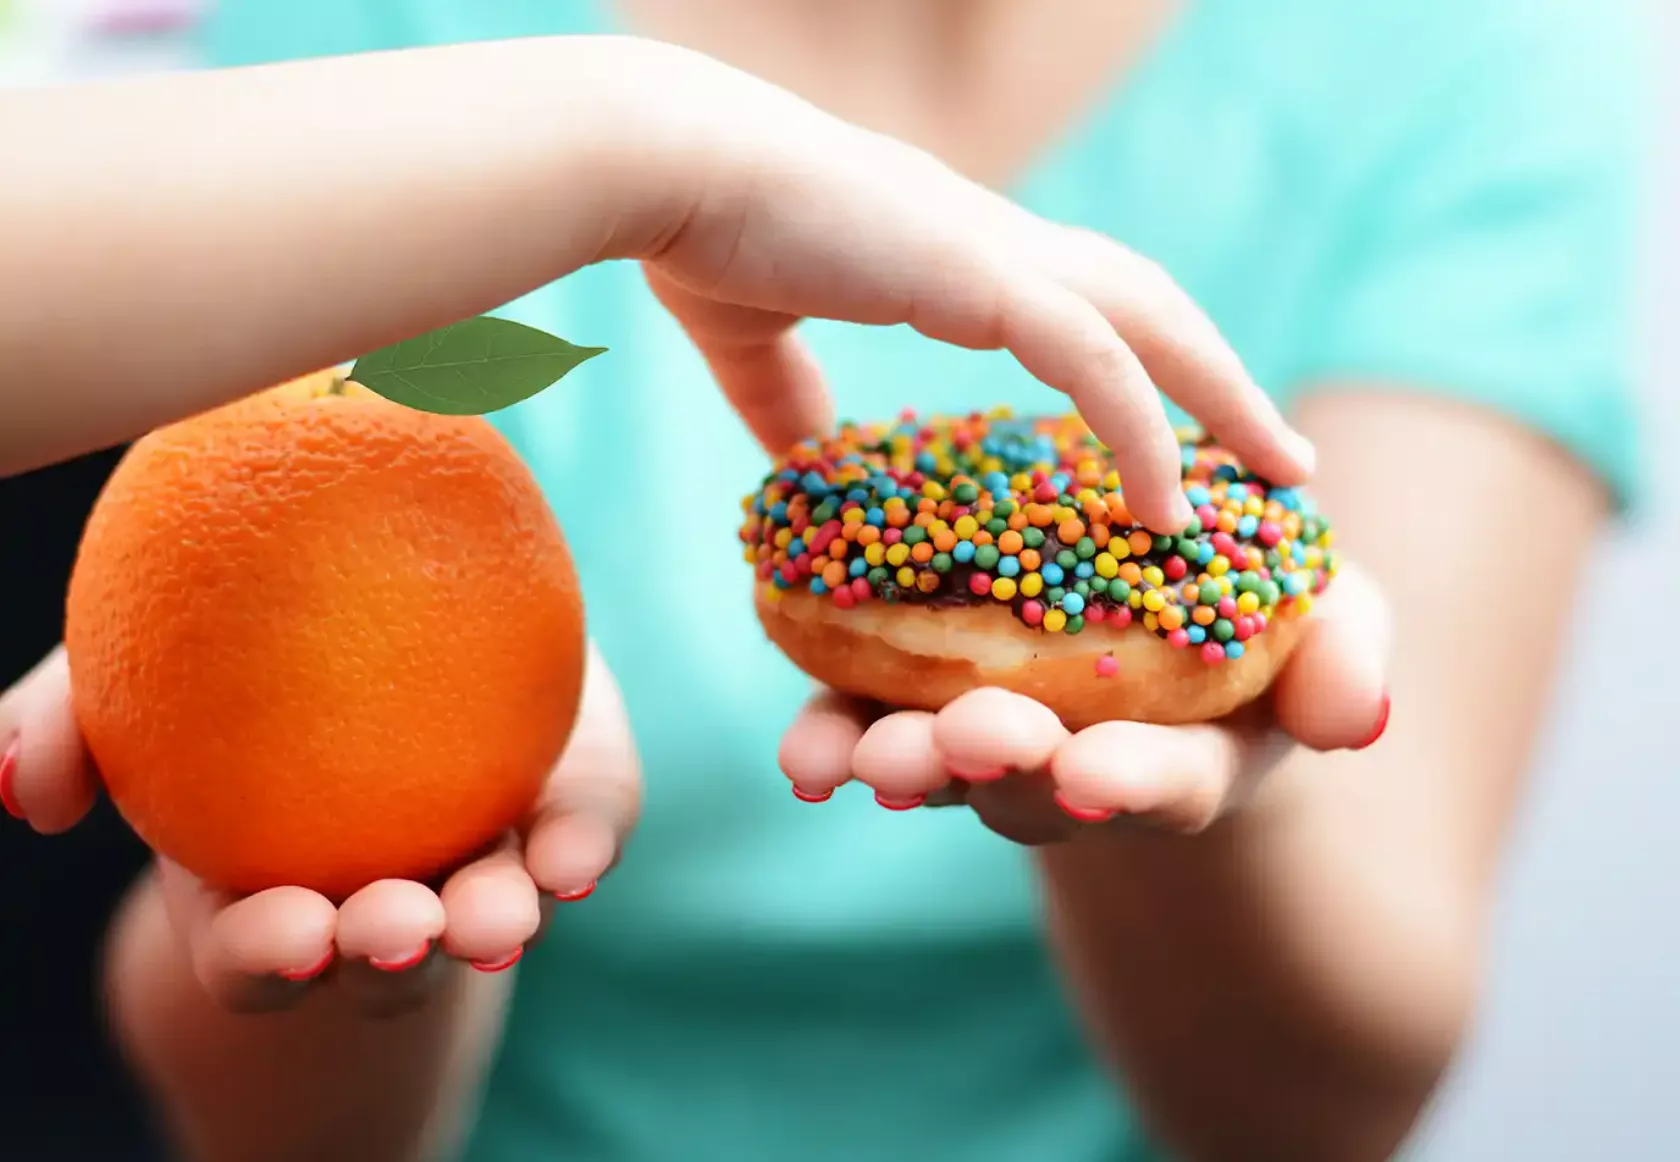 Einem Kind wird eine Orange und ein Donut hingehalten, es greift nach dem Donut.